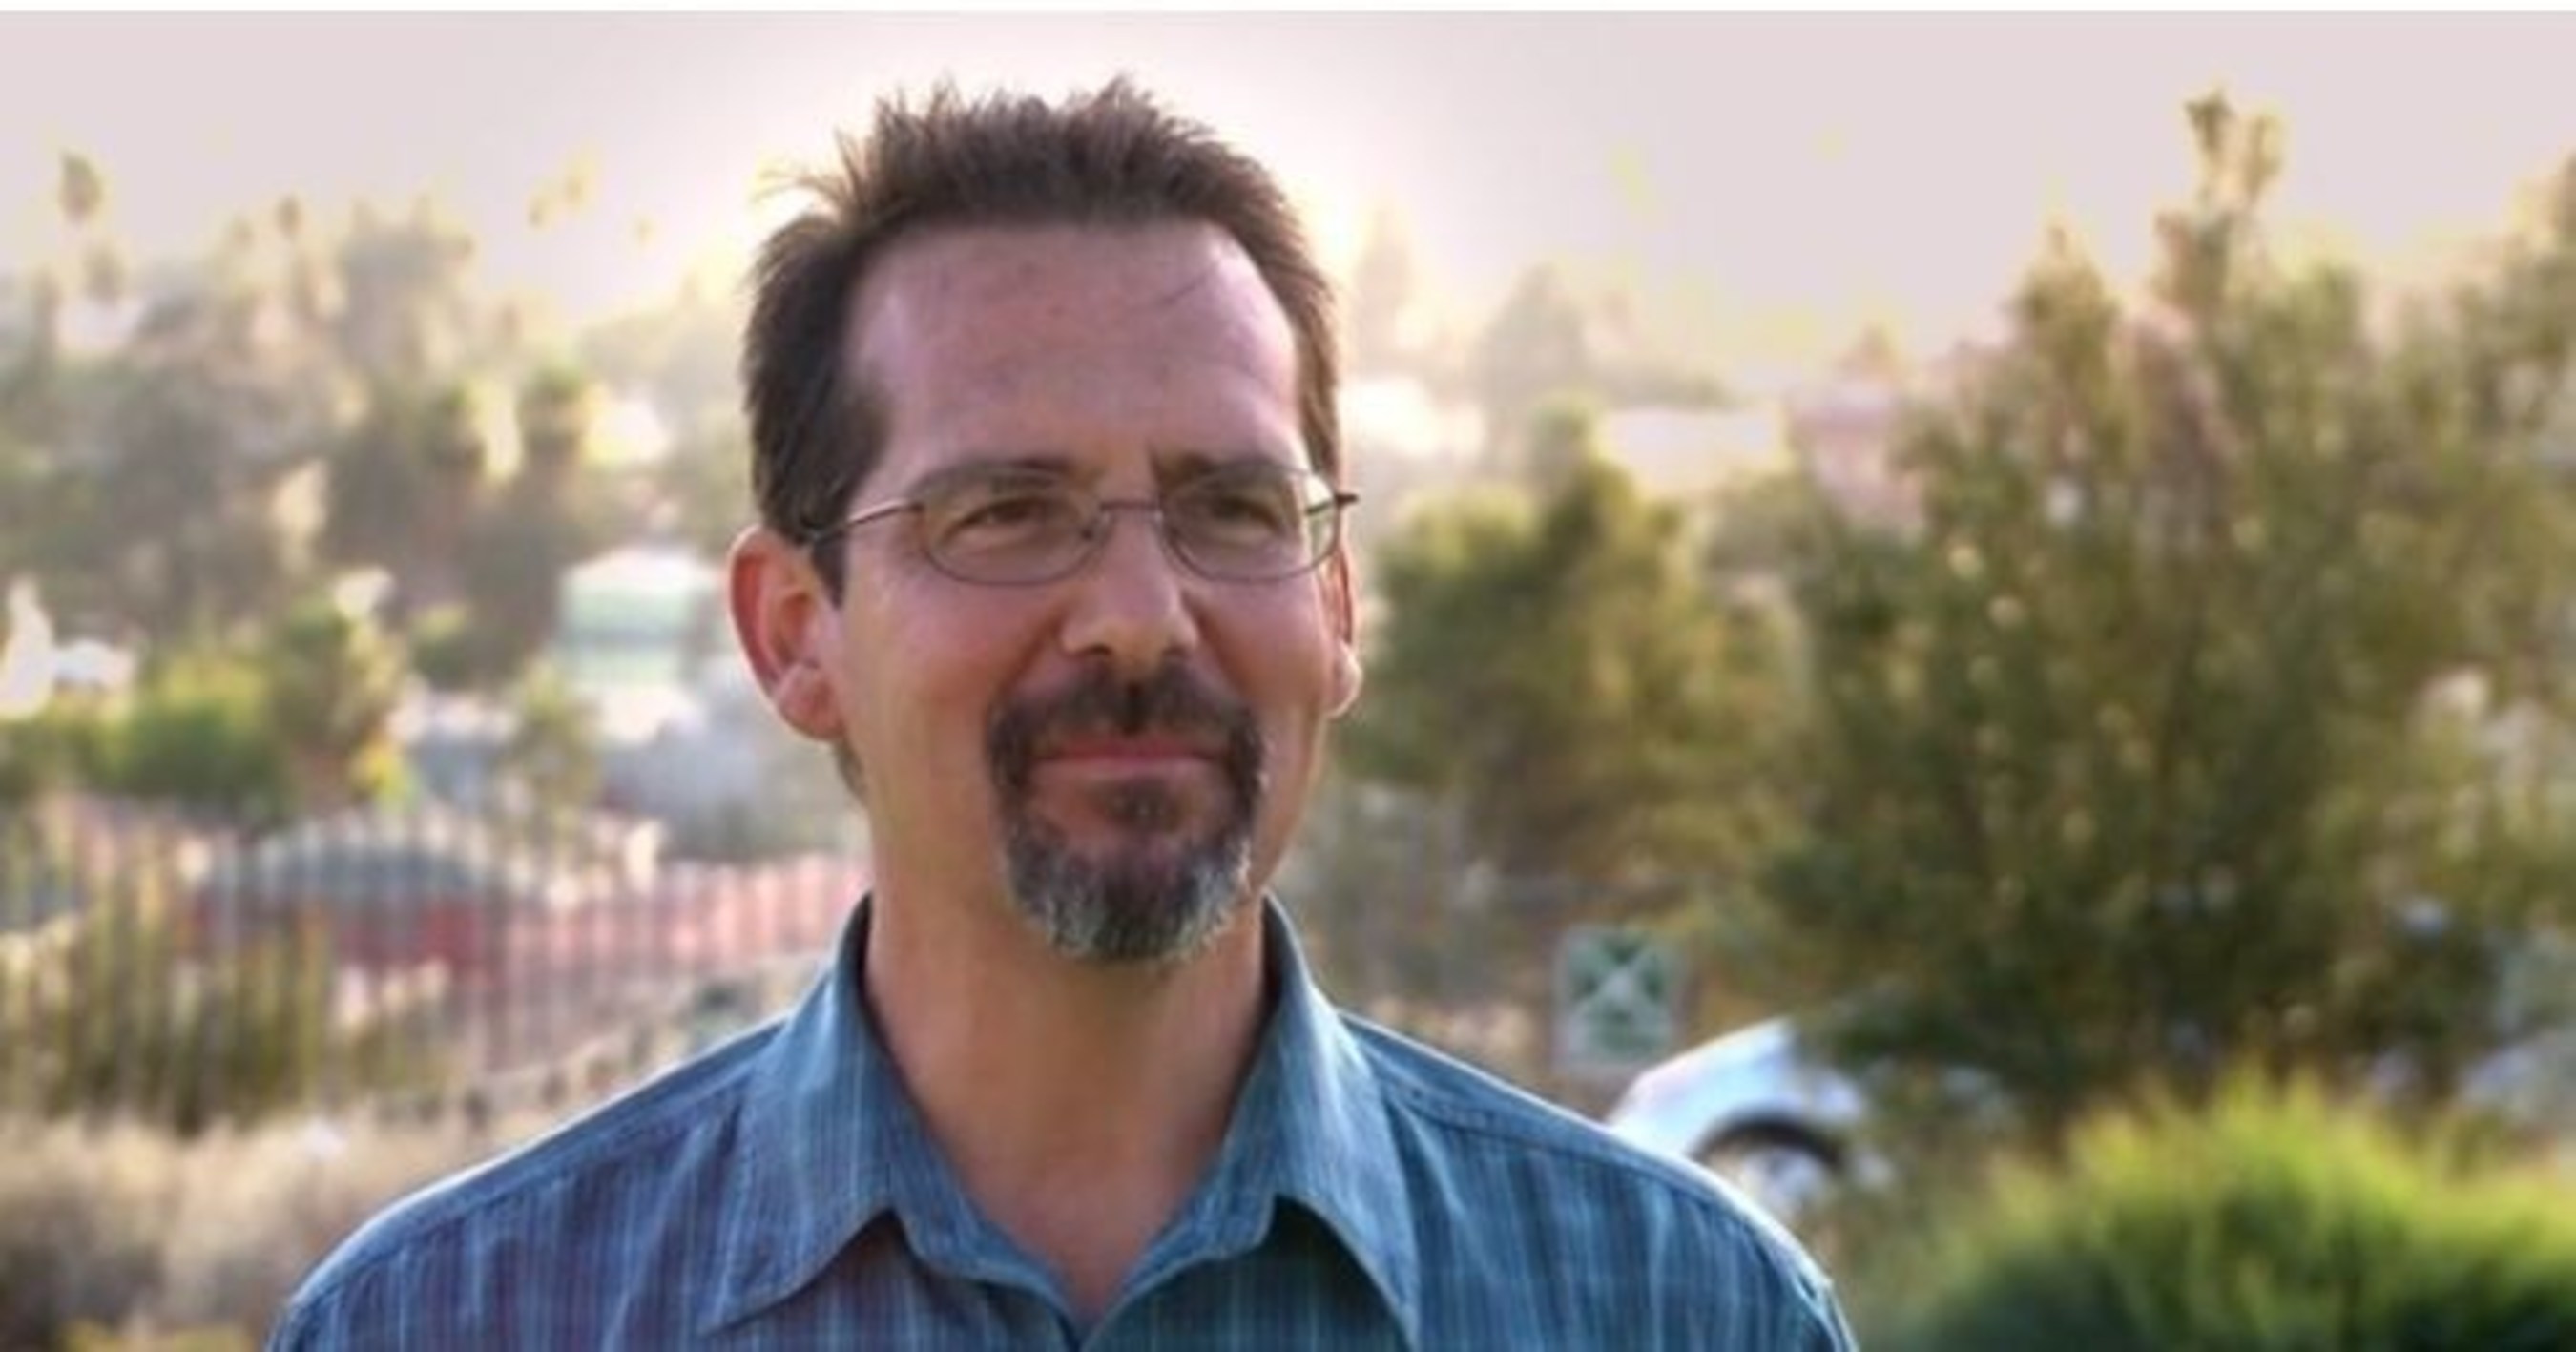 Meet Scientologist Tim Biedinger of Las Vegas, Nevada.